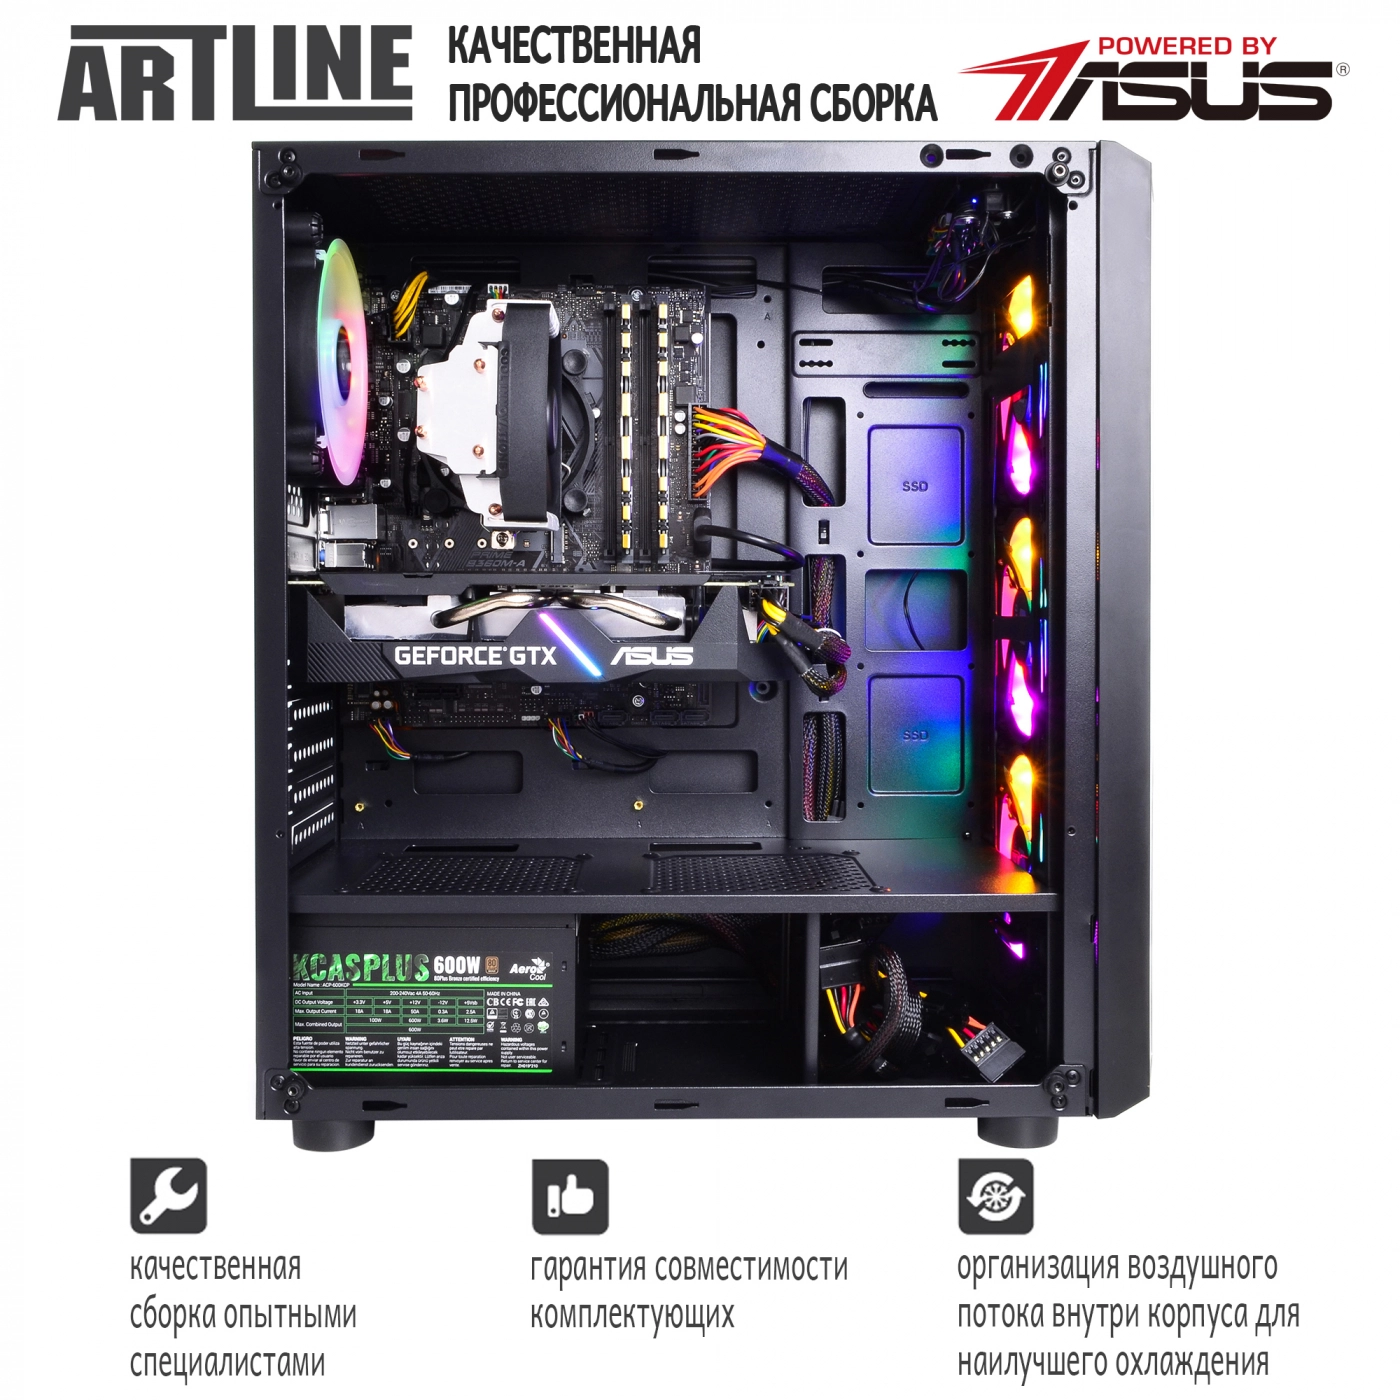 Купить Компьютер ARTLINE Gaming X65v24 - фото 9